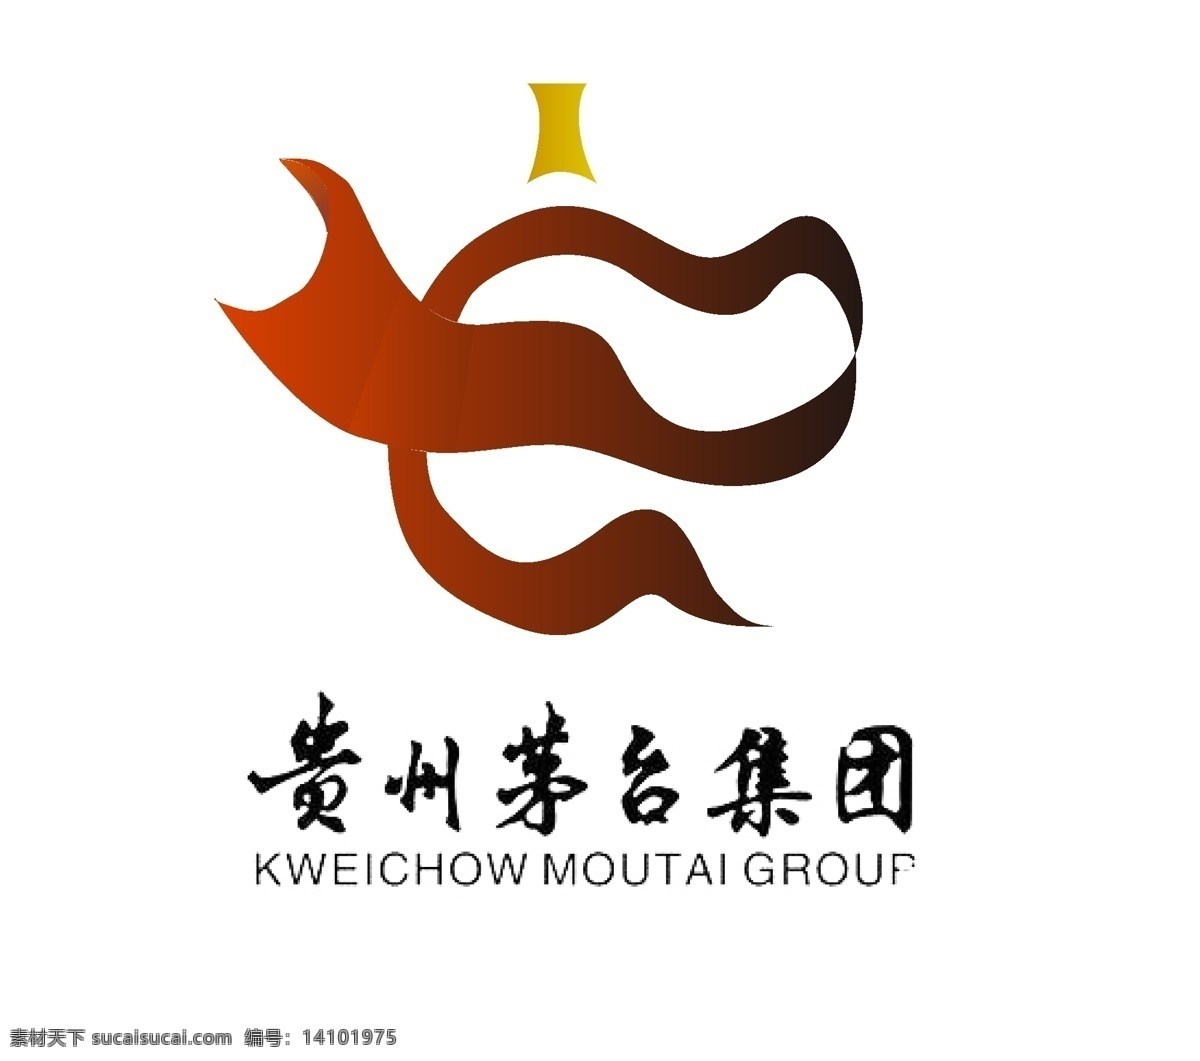 贵州茅台图片 贵州茅台 就logo 红色为主 简易 一笔完成 logo设计